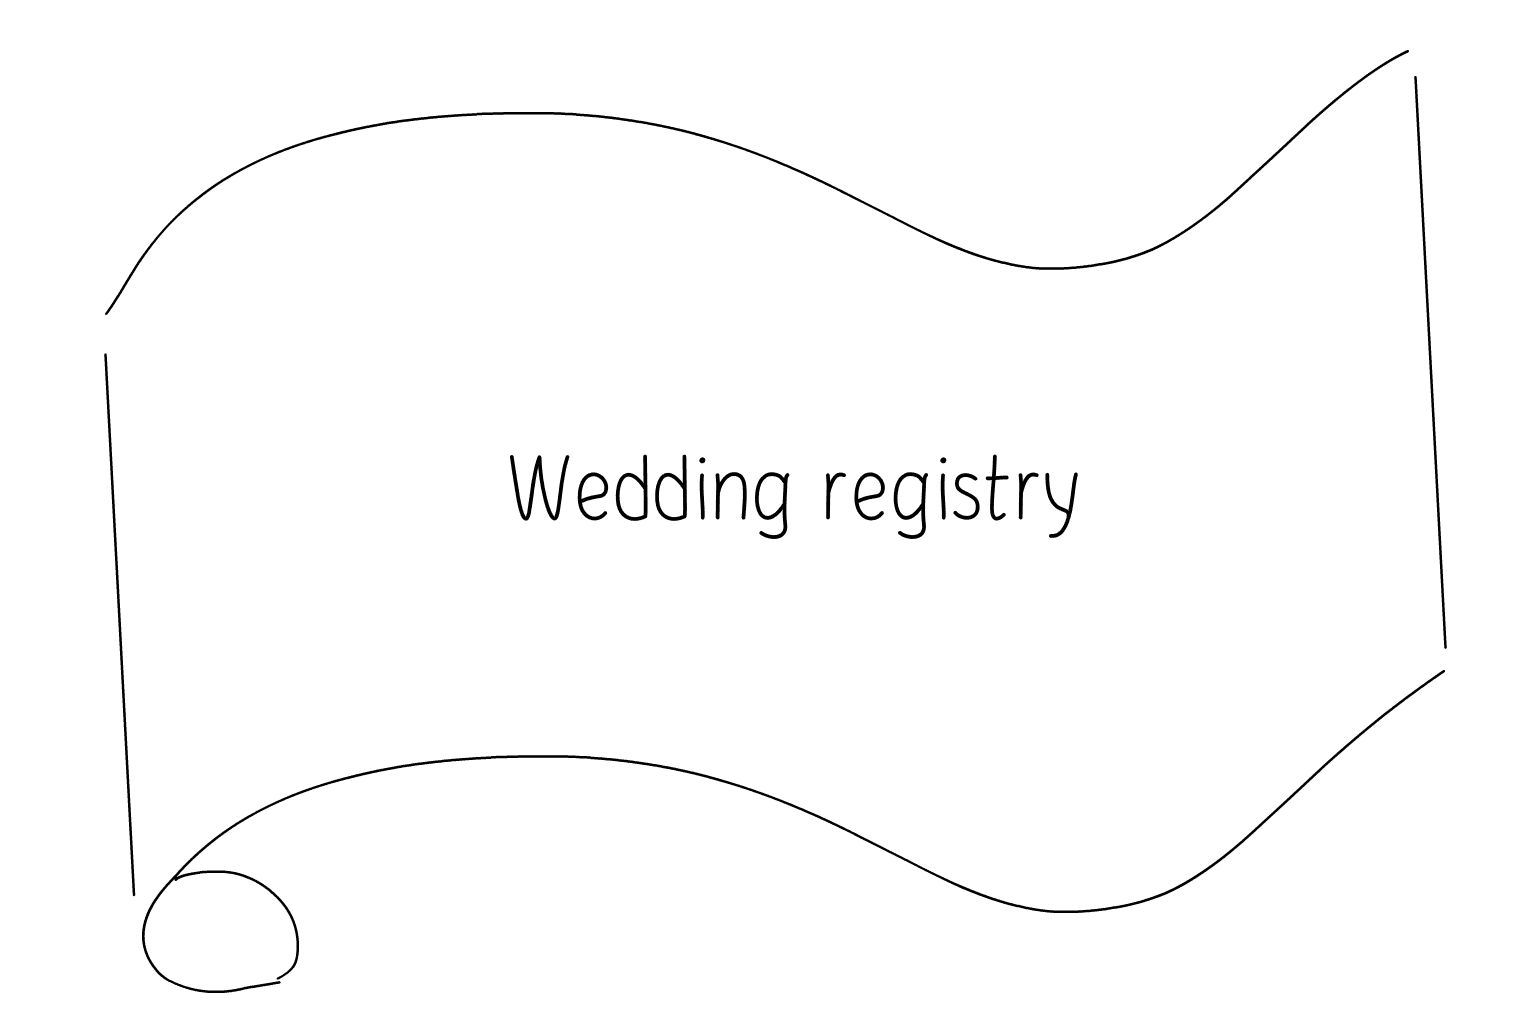 Ilustración de los servicios de registro de bodas